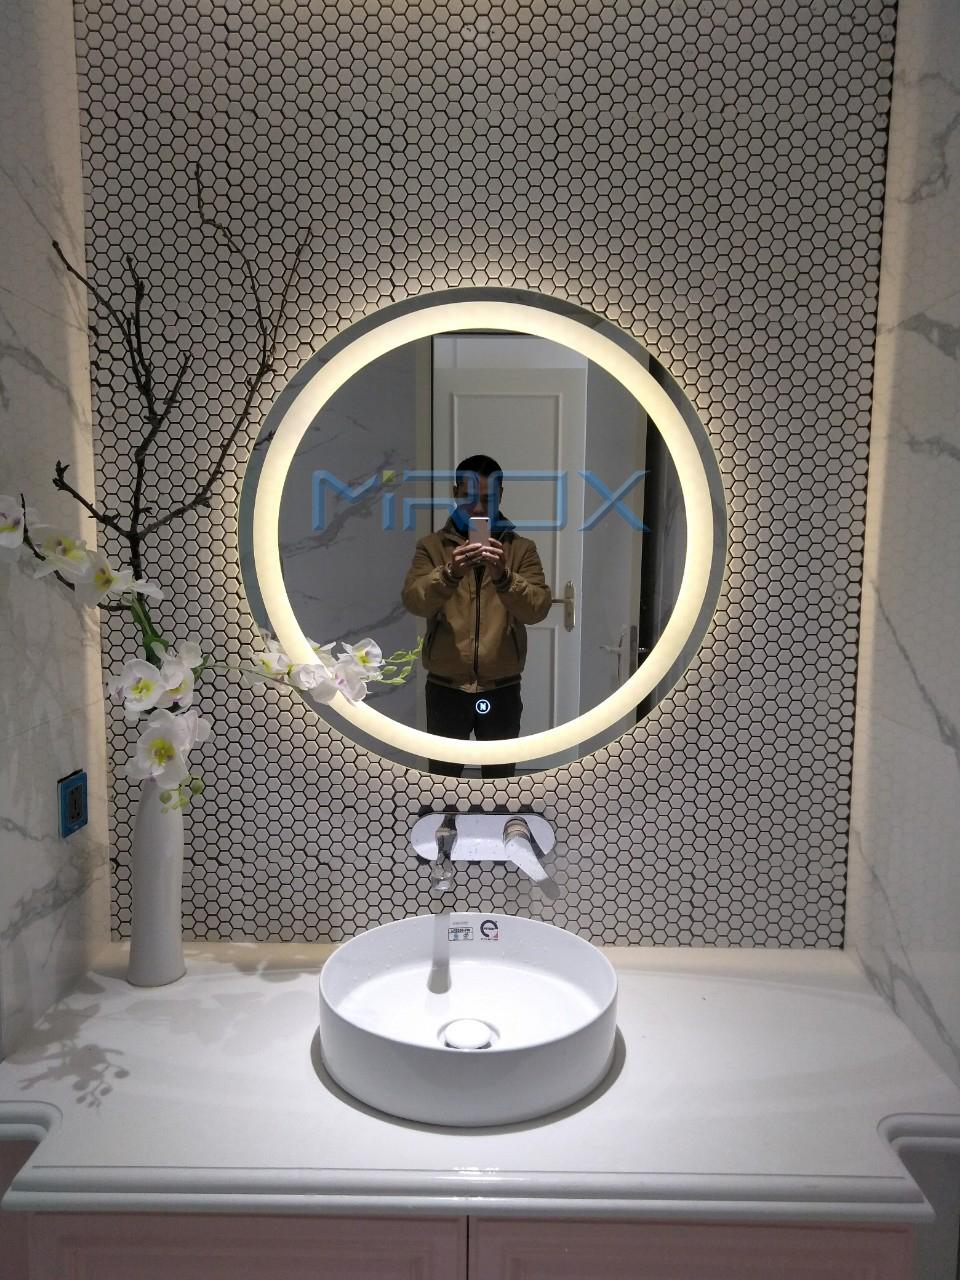 Gương đèn led tròn là sự lựa chọn hoàn hảo cho phòng tắm hiện đại của bạn. Với ánh sáng led trang trí tinh tế và hiệu quả, gương đèn led tròn tạo ra không gian sáng và sang trọng. Sản phẩm được làm từ chất liệu cao cấp, đảm bảo độ bền và chống thấm nước. Hãy xem hình ảnh liên quan để tìm hiểu thêm về gương đèn led tròn và trang trí phòng tắm của bạn!